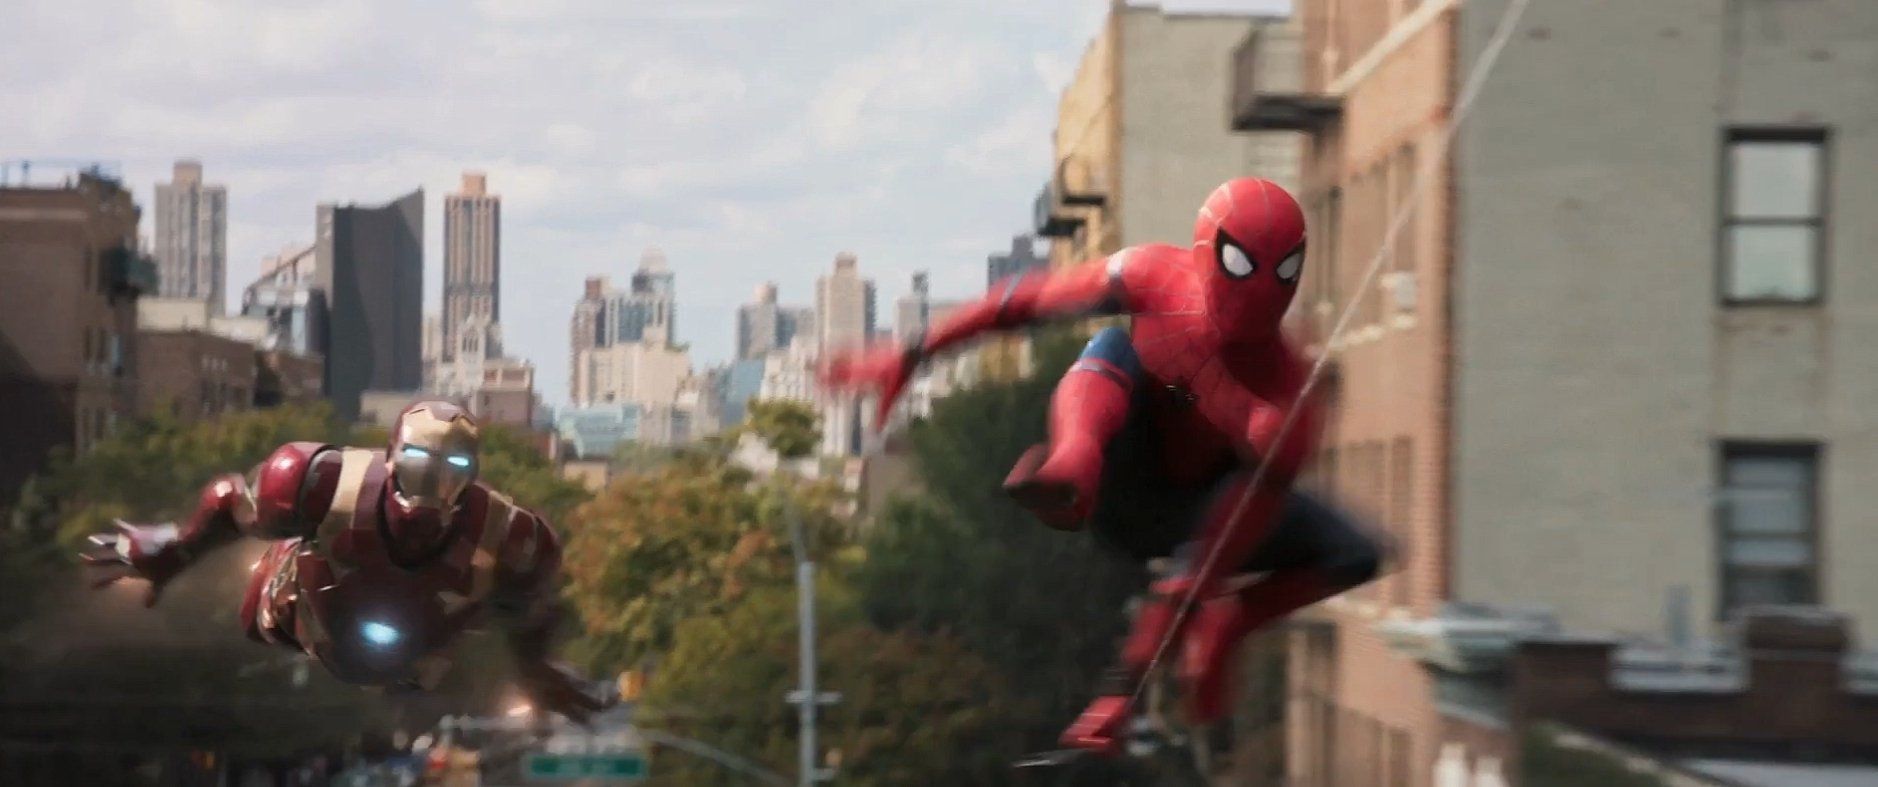 Spider-man homecoming : 2 bandes annonces avec iron man, le vautour et le shocker #7